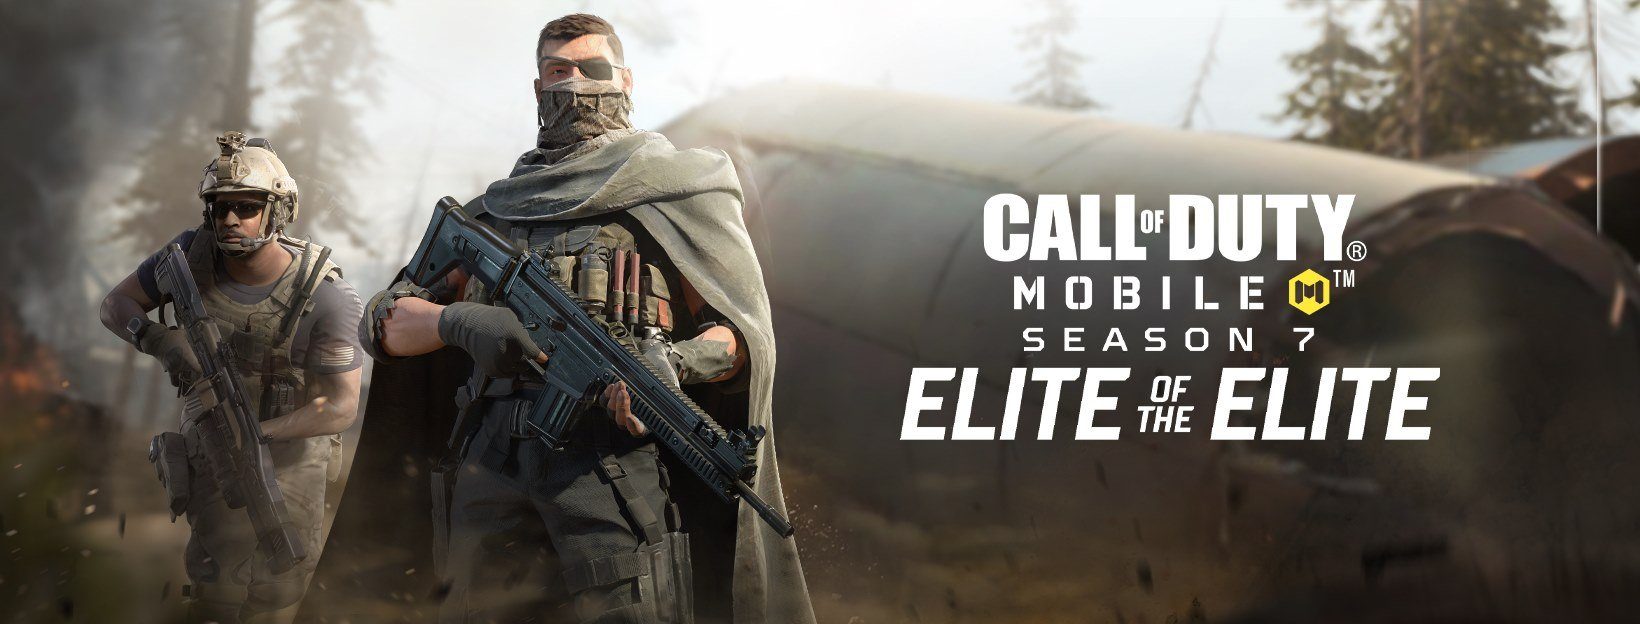 لعبة Call of Duty: Mobile تضيف وضع BR جديد ، ذهبيًا خالصًا جنبًا إلى جنب مع حدث جديد